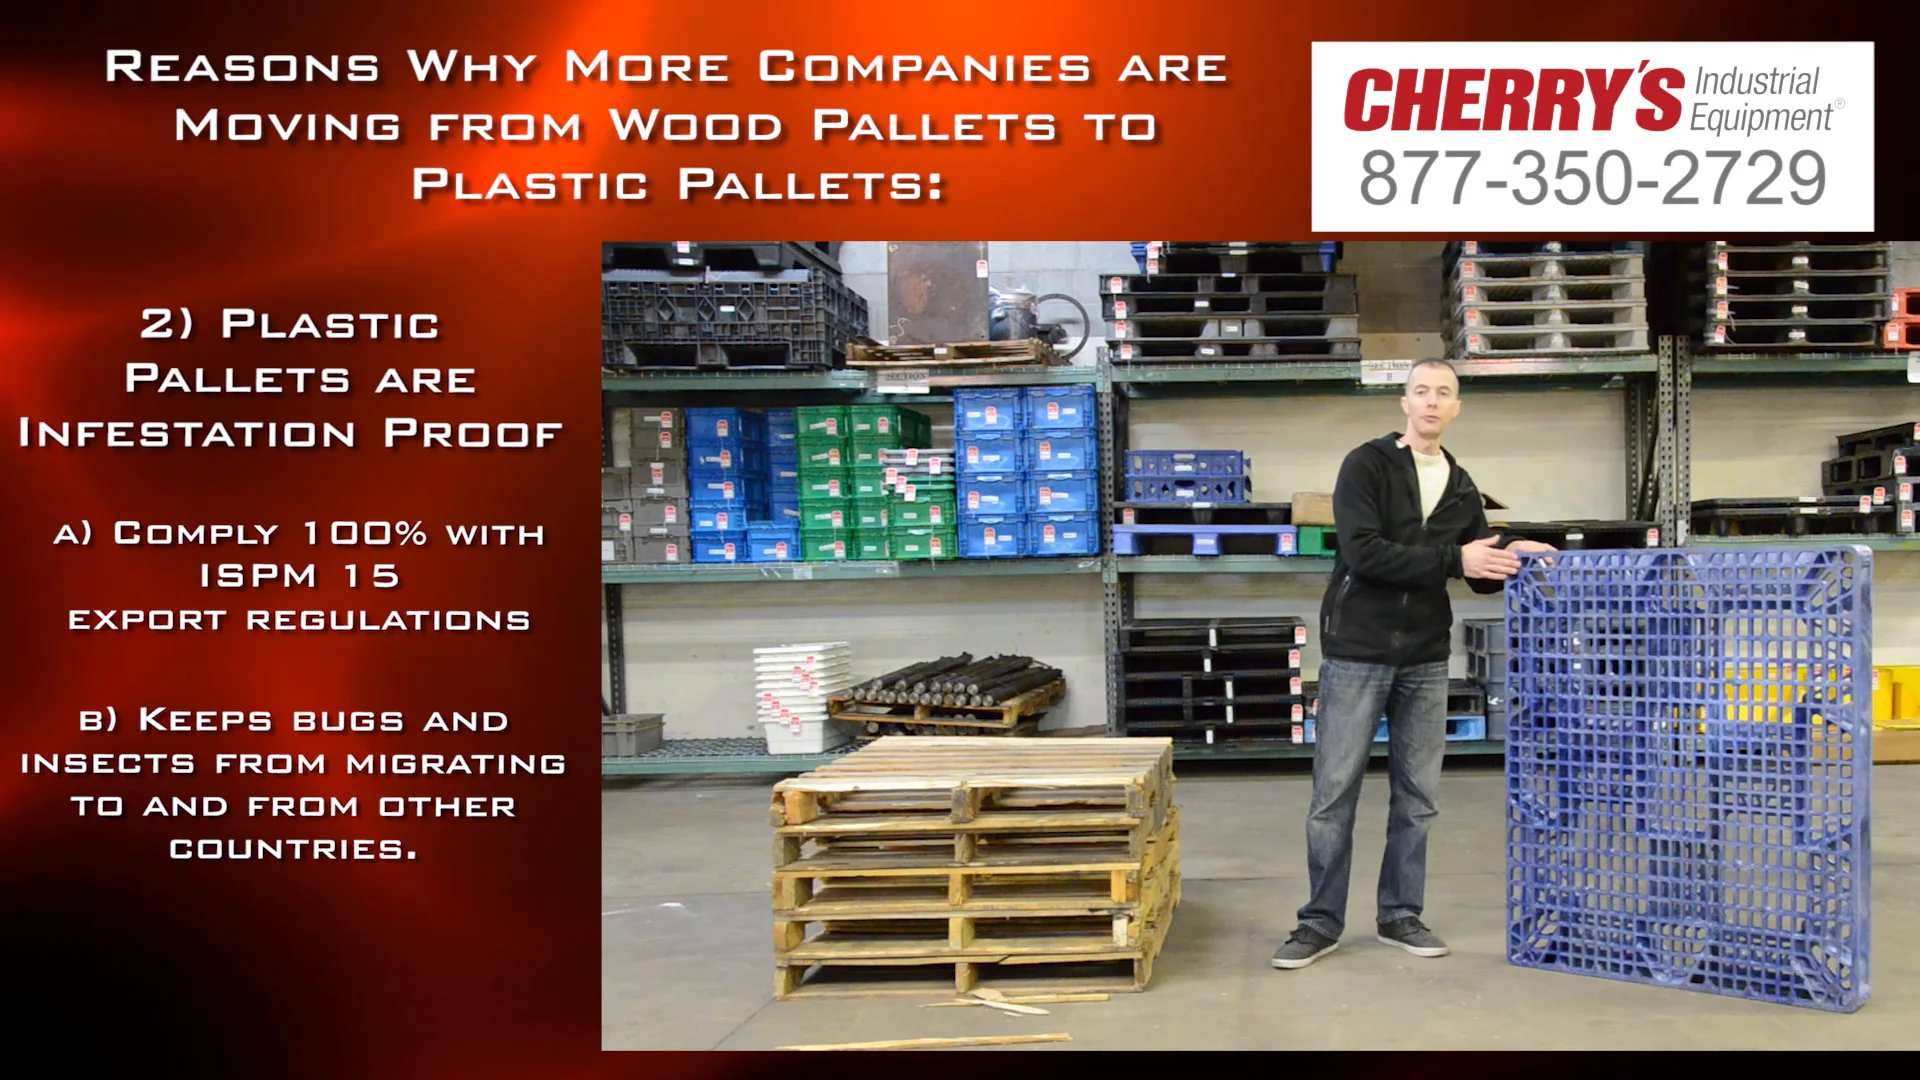 Clean & Hygienic Plastic Pallets